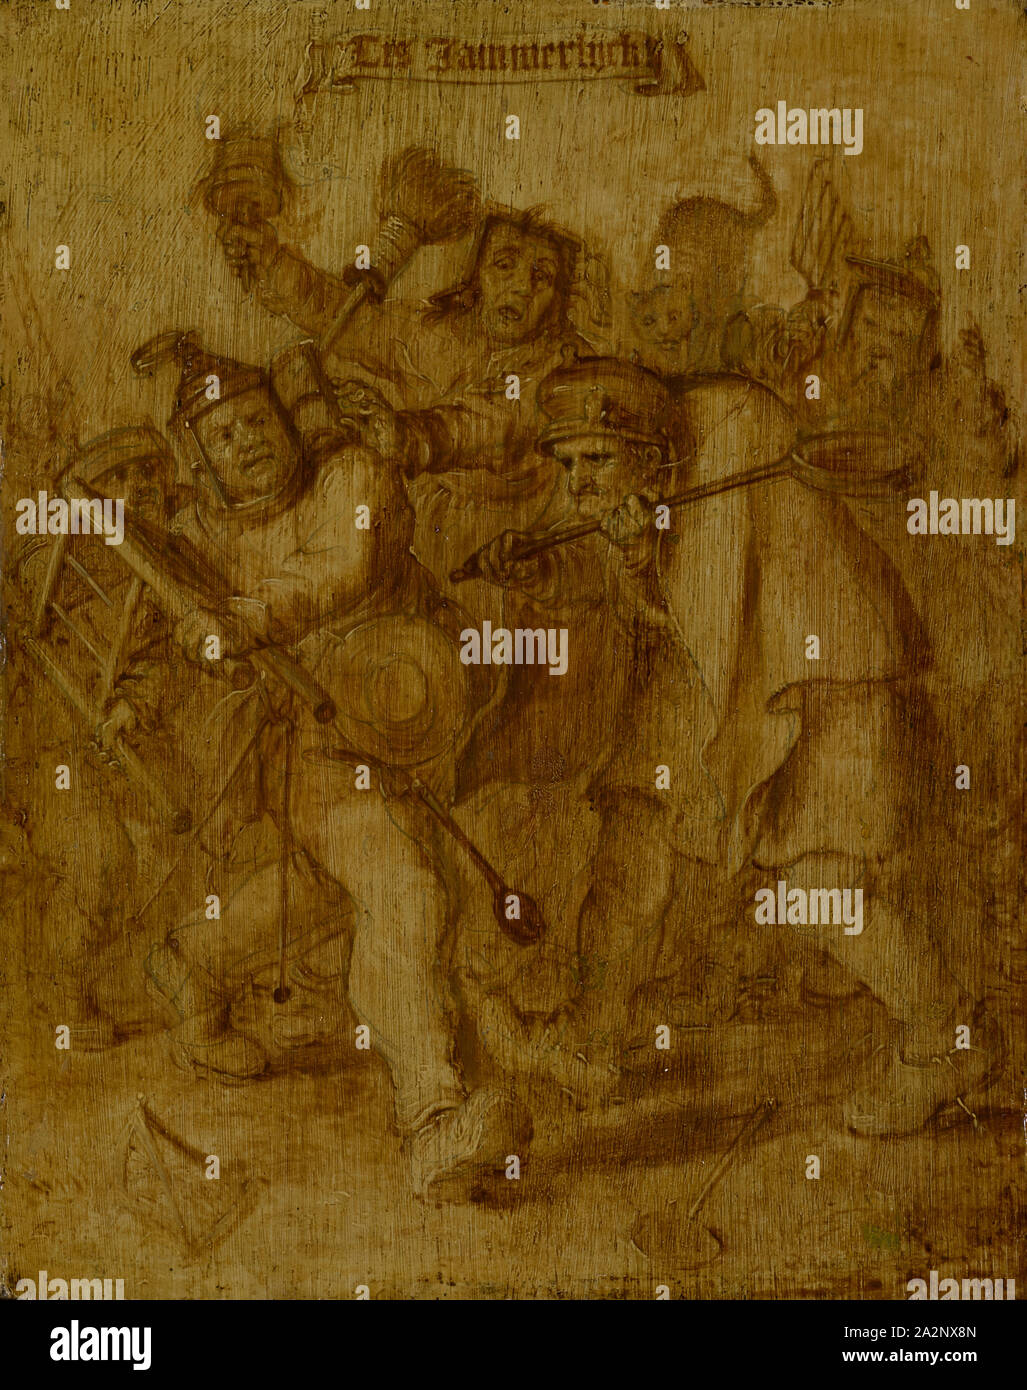 Raufende Bauern, huile sur bois de chêne, 27 x 21,5 cm, reste de la signature en bas à gauche : Un fichier .c., en ... Sur le dessus de la SIT Jammerlijck rotulus : Adriaen Pietersz., van de Venne, 1589-1662 Delft Den Haag Banque D'Images